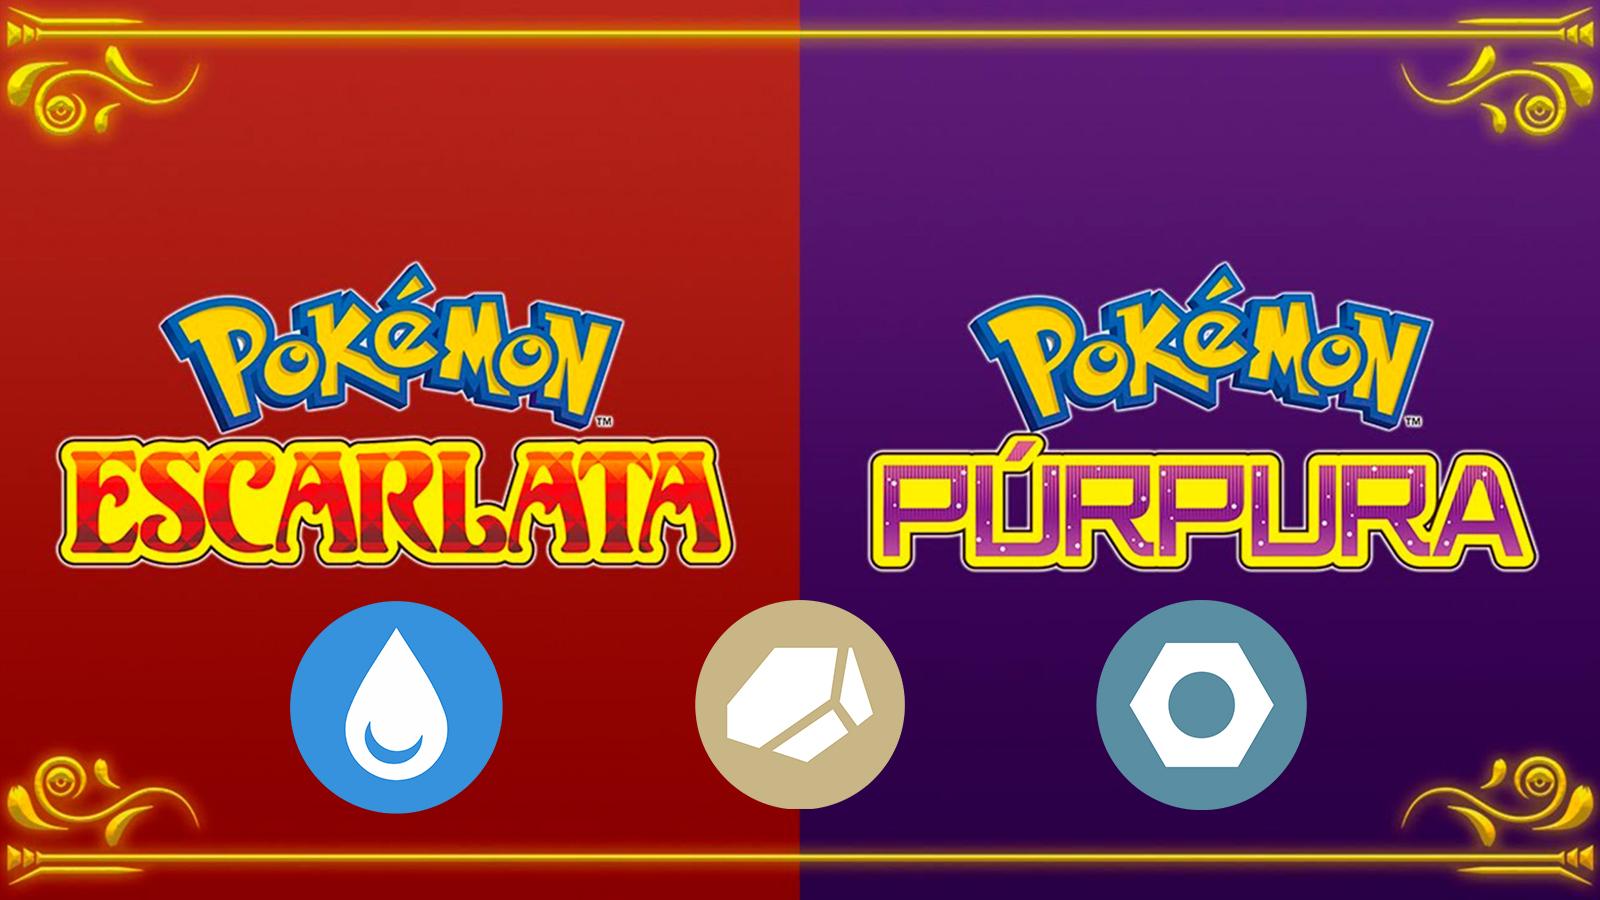 Tabla de tipos Pokémon en 2023  Pokemon en español, Pokemon, Agua fuego